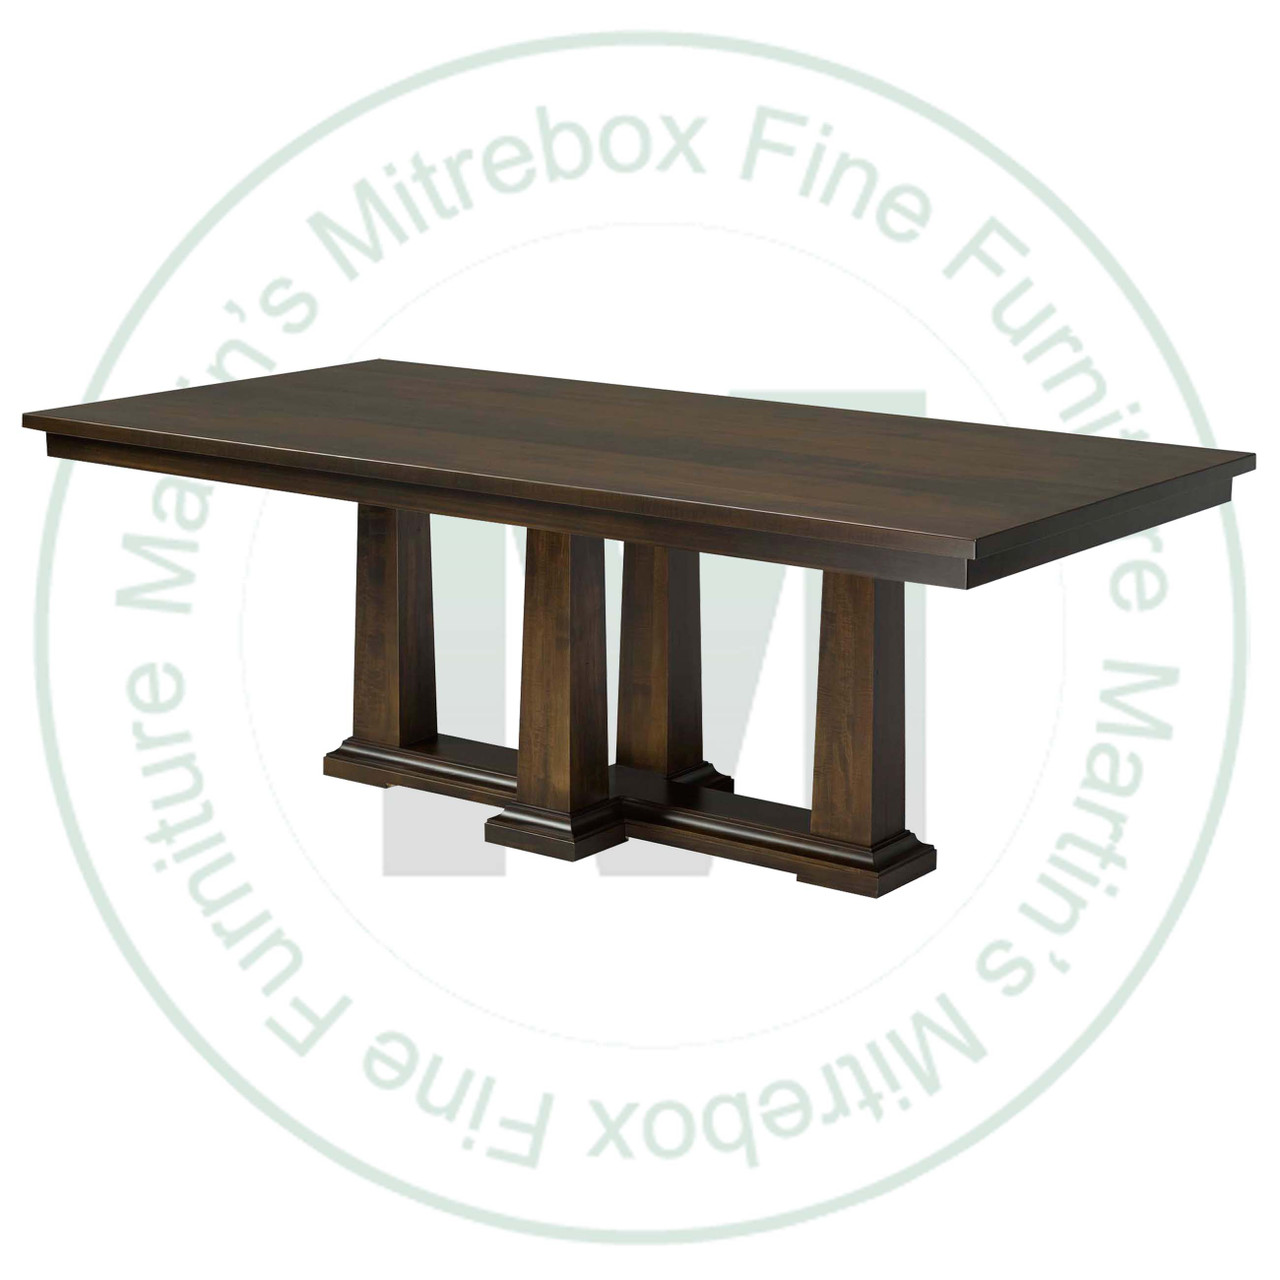 Oak Parthenon Double Pedestal Table 54''D x 120''W x 30''H And 2 - 16'' Extensions